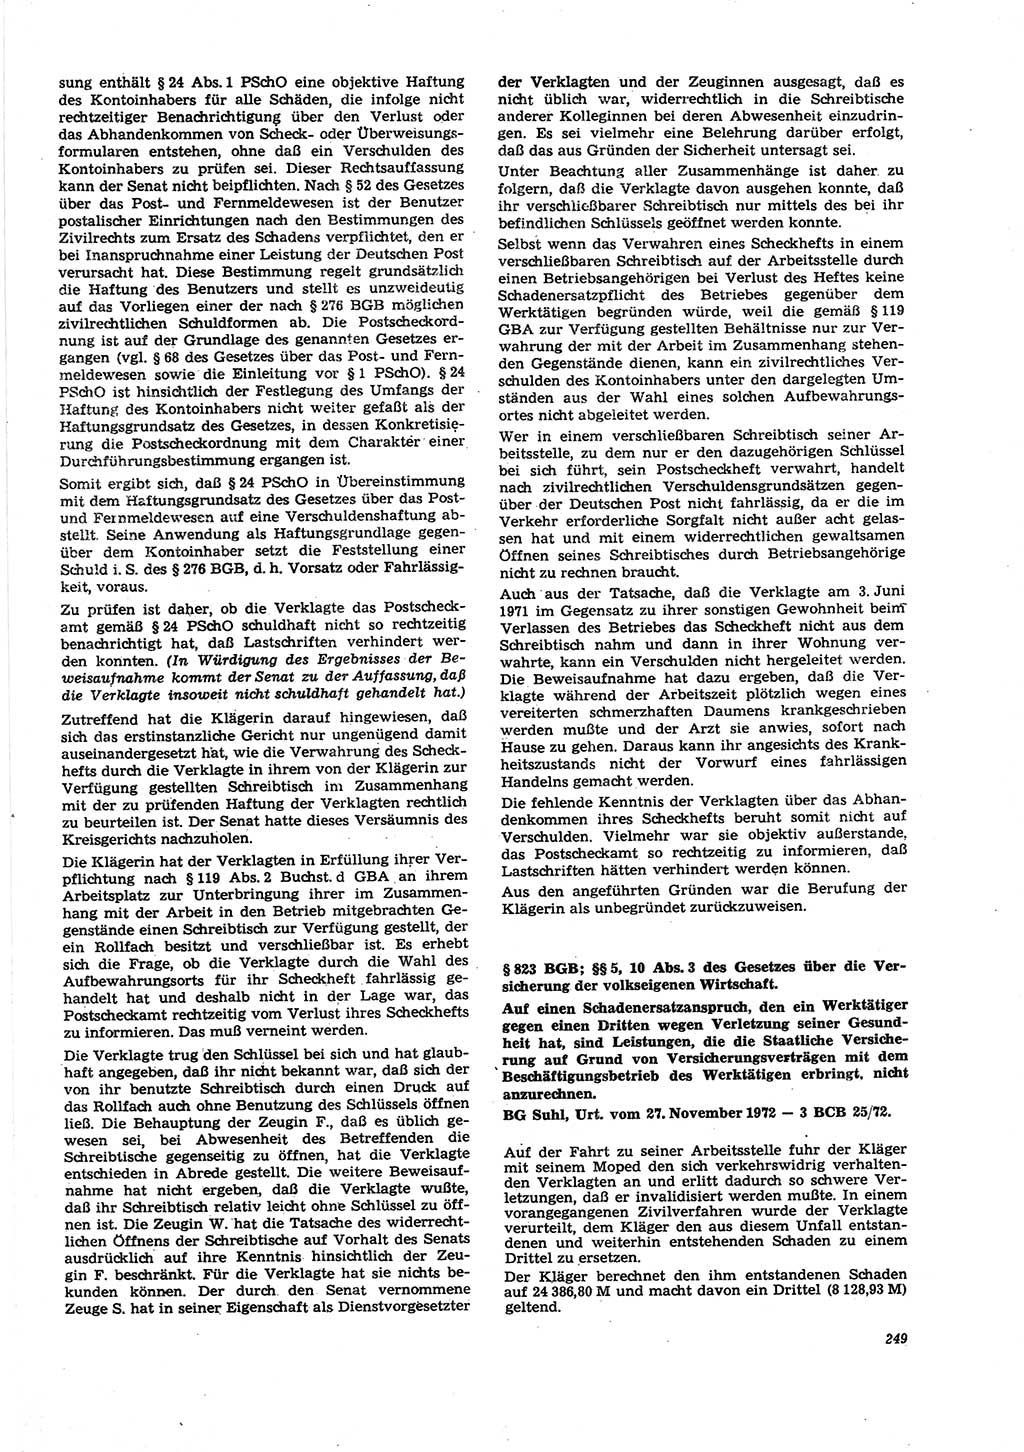 Neue Justiz (NJ), Zeitschrift für Recht und Rechtswissenschaft [Deutsche Demokratische Republik (DDR)], 27. Jahrgang 1973, Seite 249 (NJ DDR 1973, S. 249)